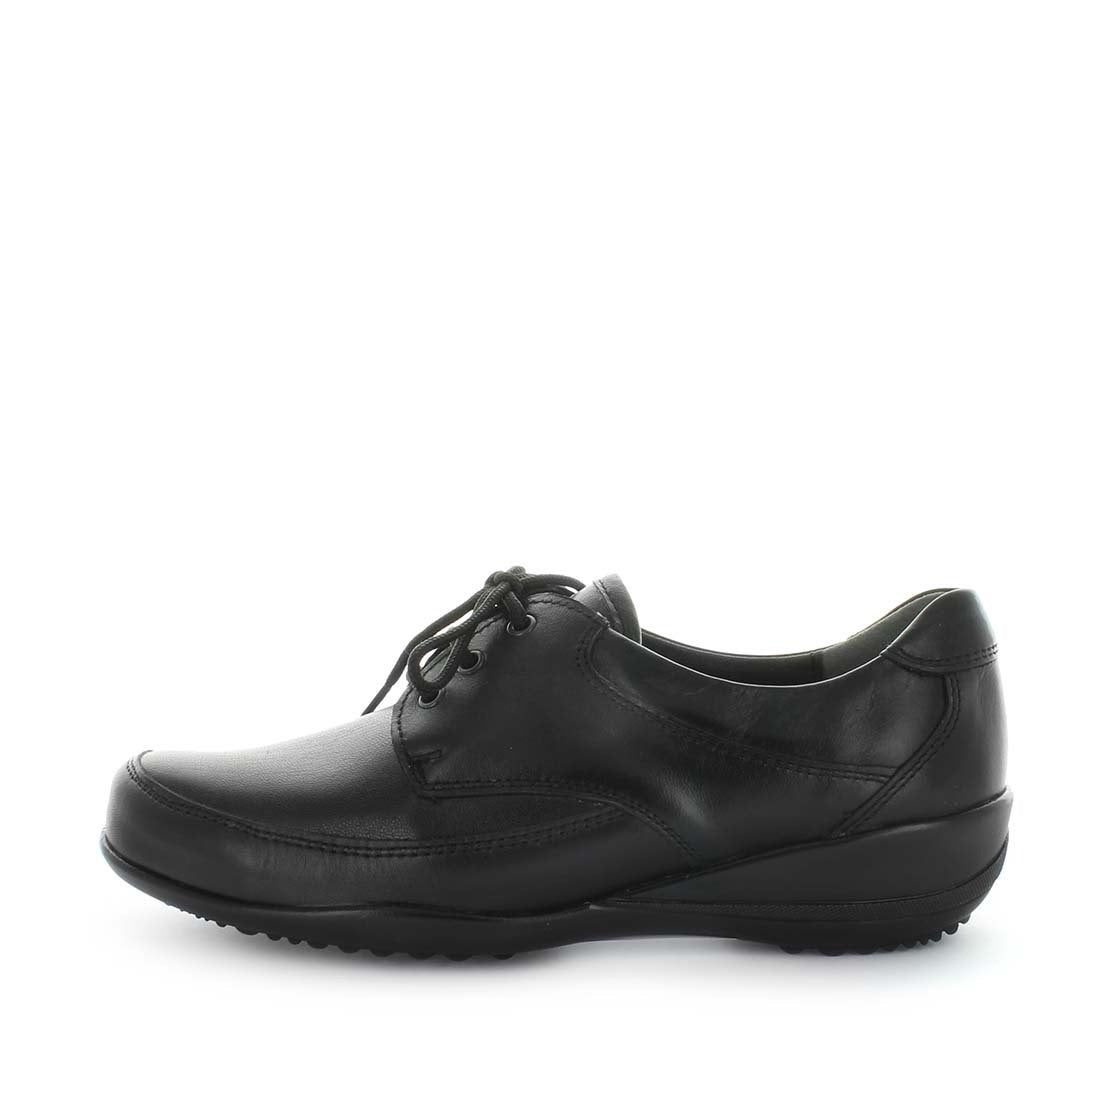 KALMA by KIARFLEX - iShoes - Wide Fit, Women's Shoes, Women's Shoes: Flats, Women's Shoes: Women's Work Shoes - FOOTWEAR-FOOTWEAR